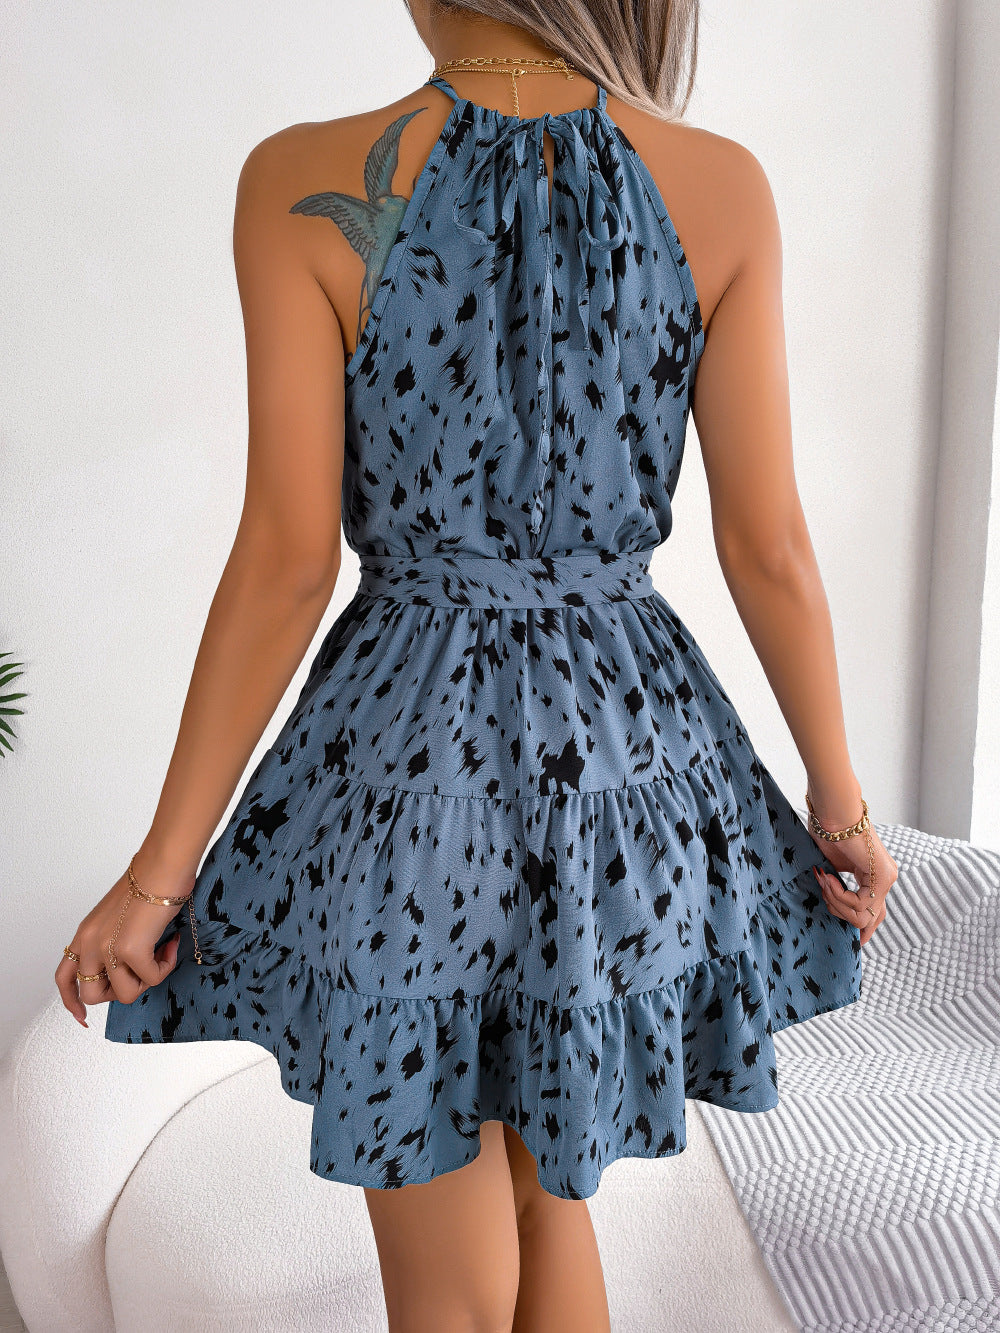 Fashion Beach Casual Leopard Print Ruffled Summer Dress